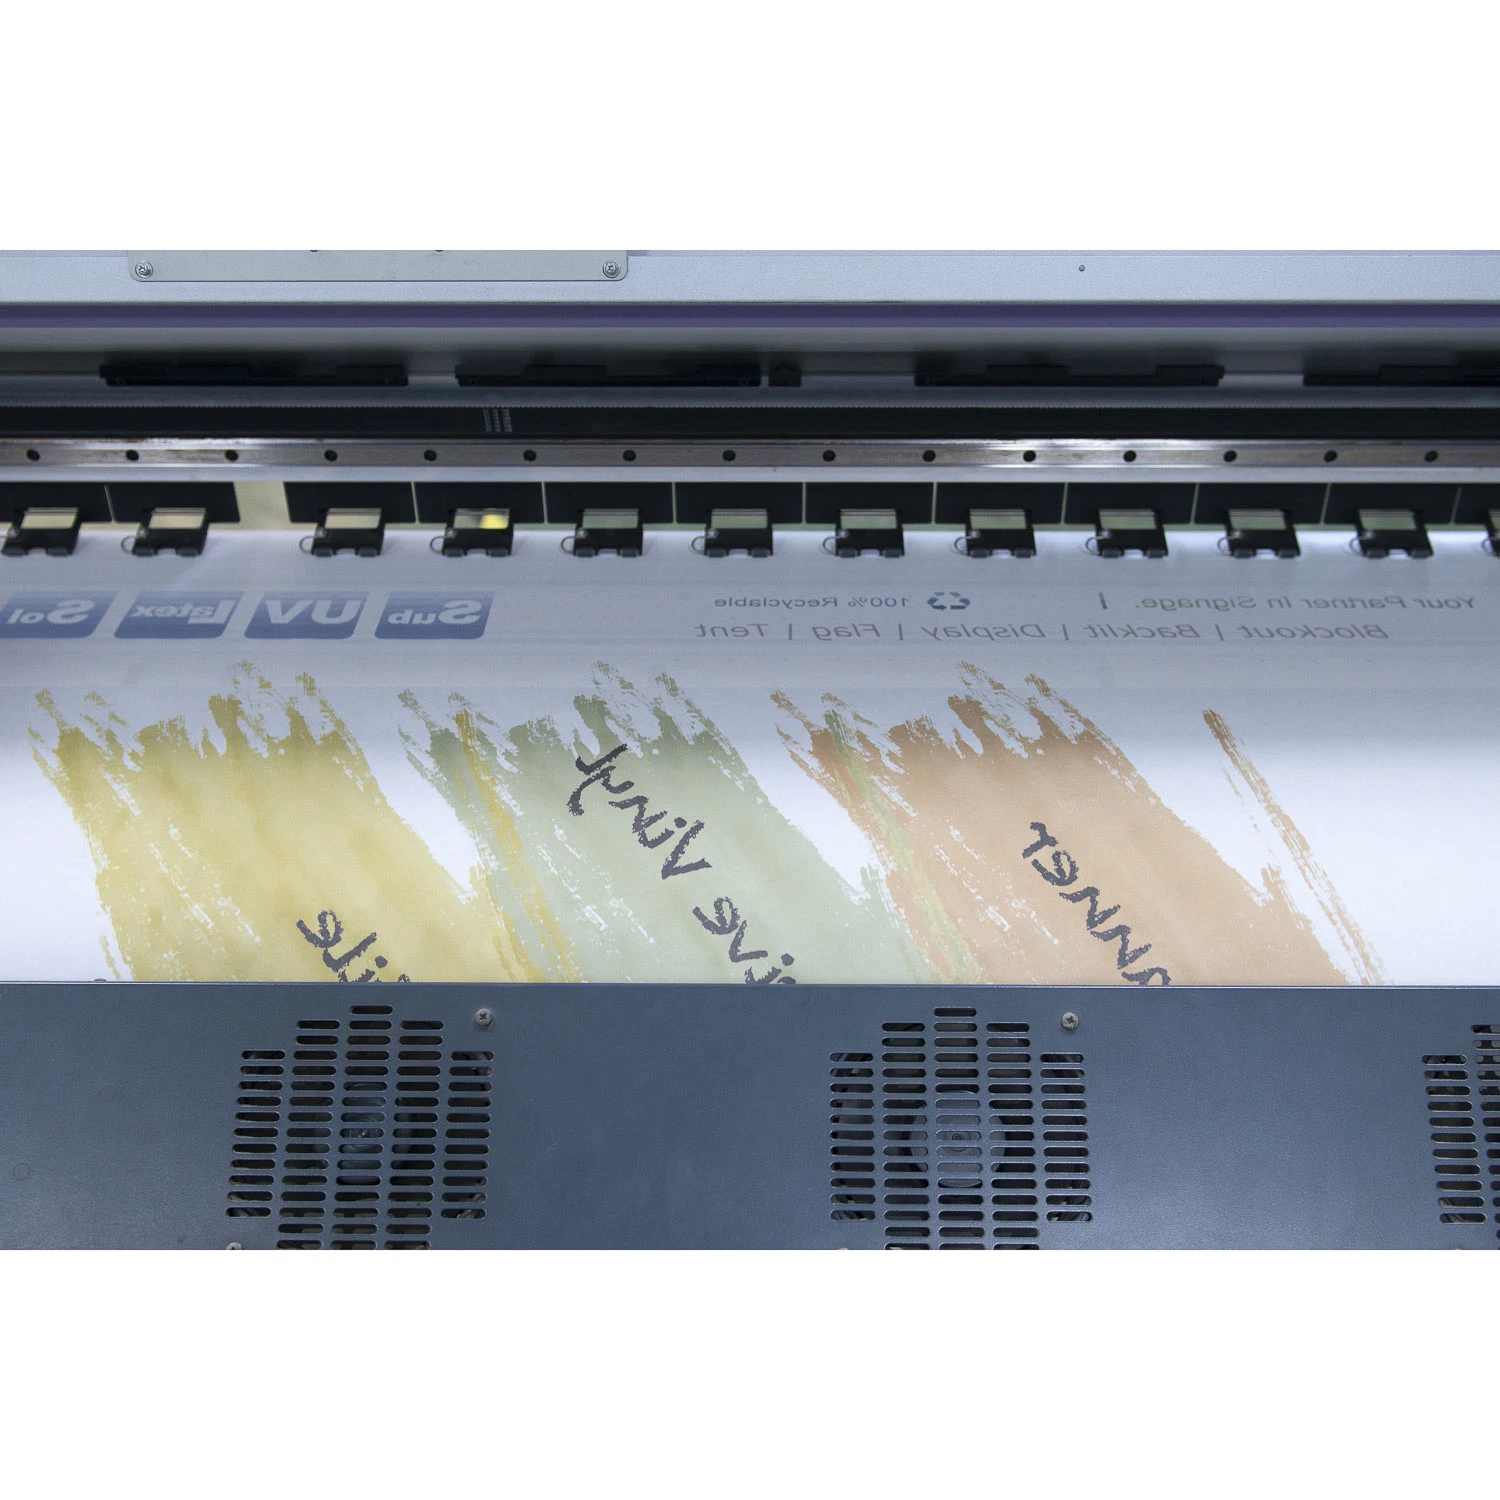 A Impressão Digital Unisign tecidos de poliéster tricotadas Impressão dye sublimation para publicidade